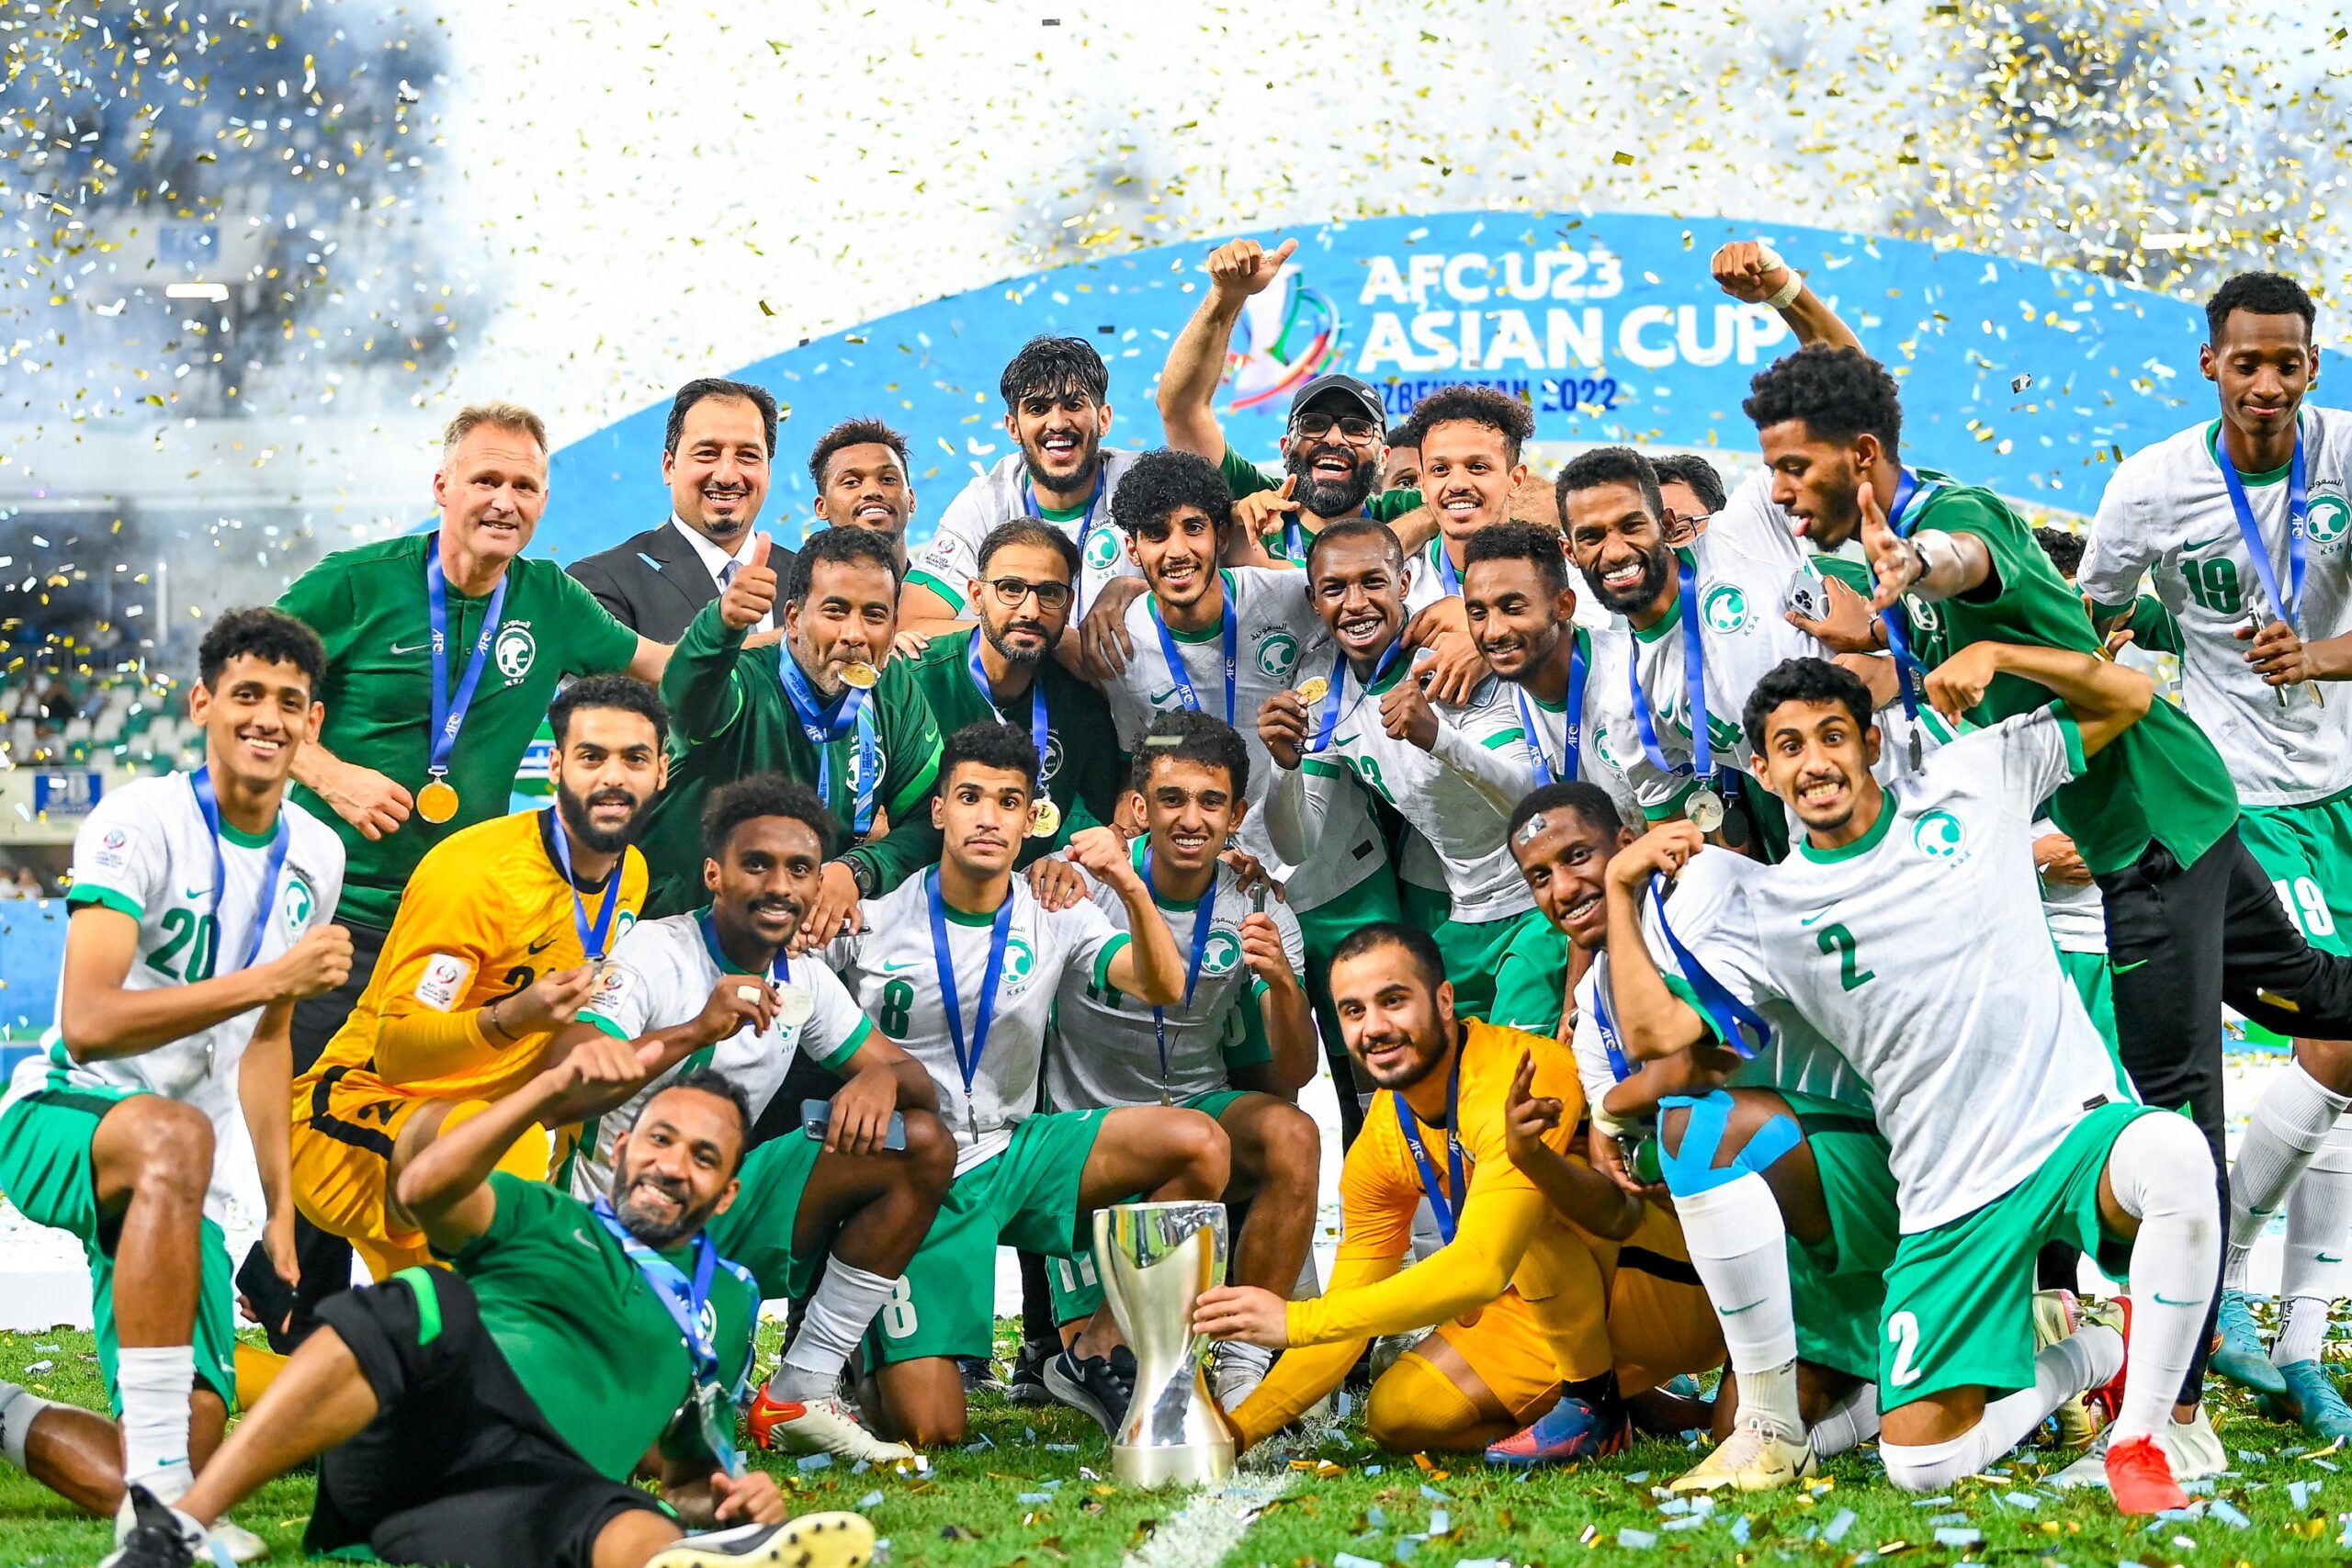 U23 Việt Nam gặp U23 Saudi Arabia ở tứ kết U23 châu Á, fan Việt mơ tái ...